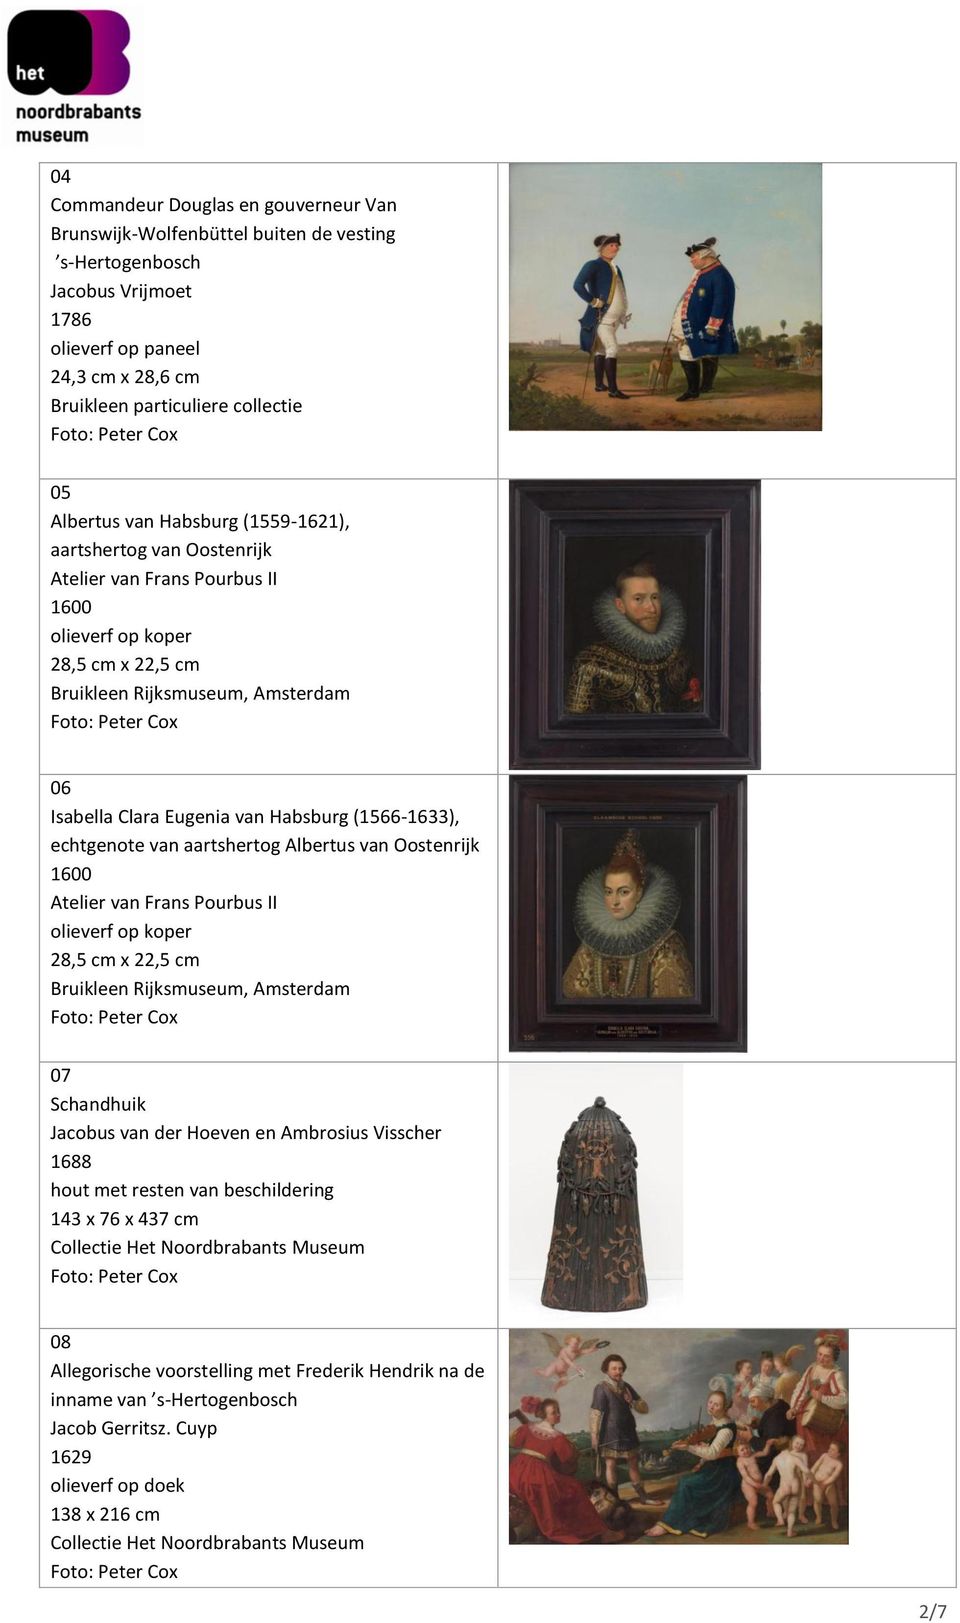 Habsburg (1566-1633), echtgenote van aartshertog Albertus van Oostenrijk 1600 Atelier van Frans Pourbus II olieverf op koper 28,5 cm x 22,5 cm Bruikleen Rijksmuseum, Amsterdam 07 Schandhuik Jacobus